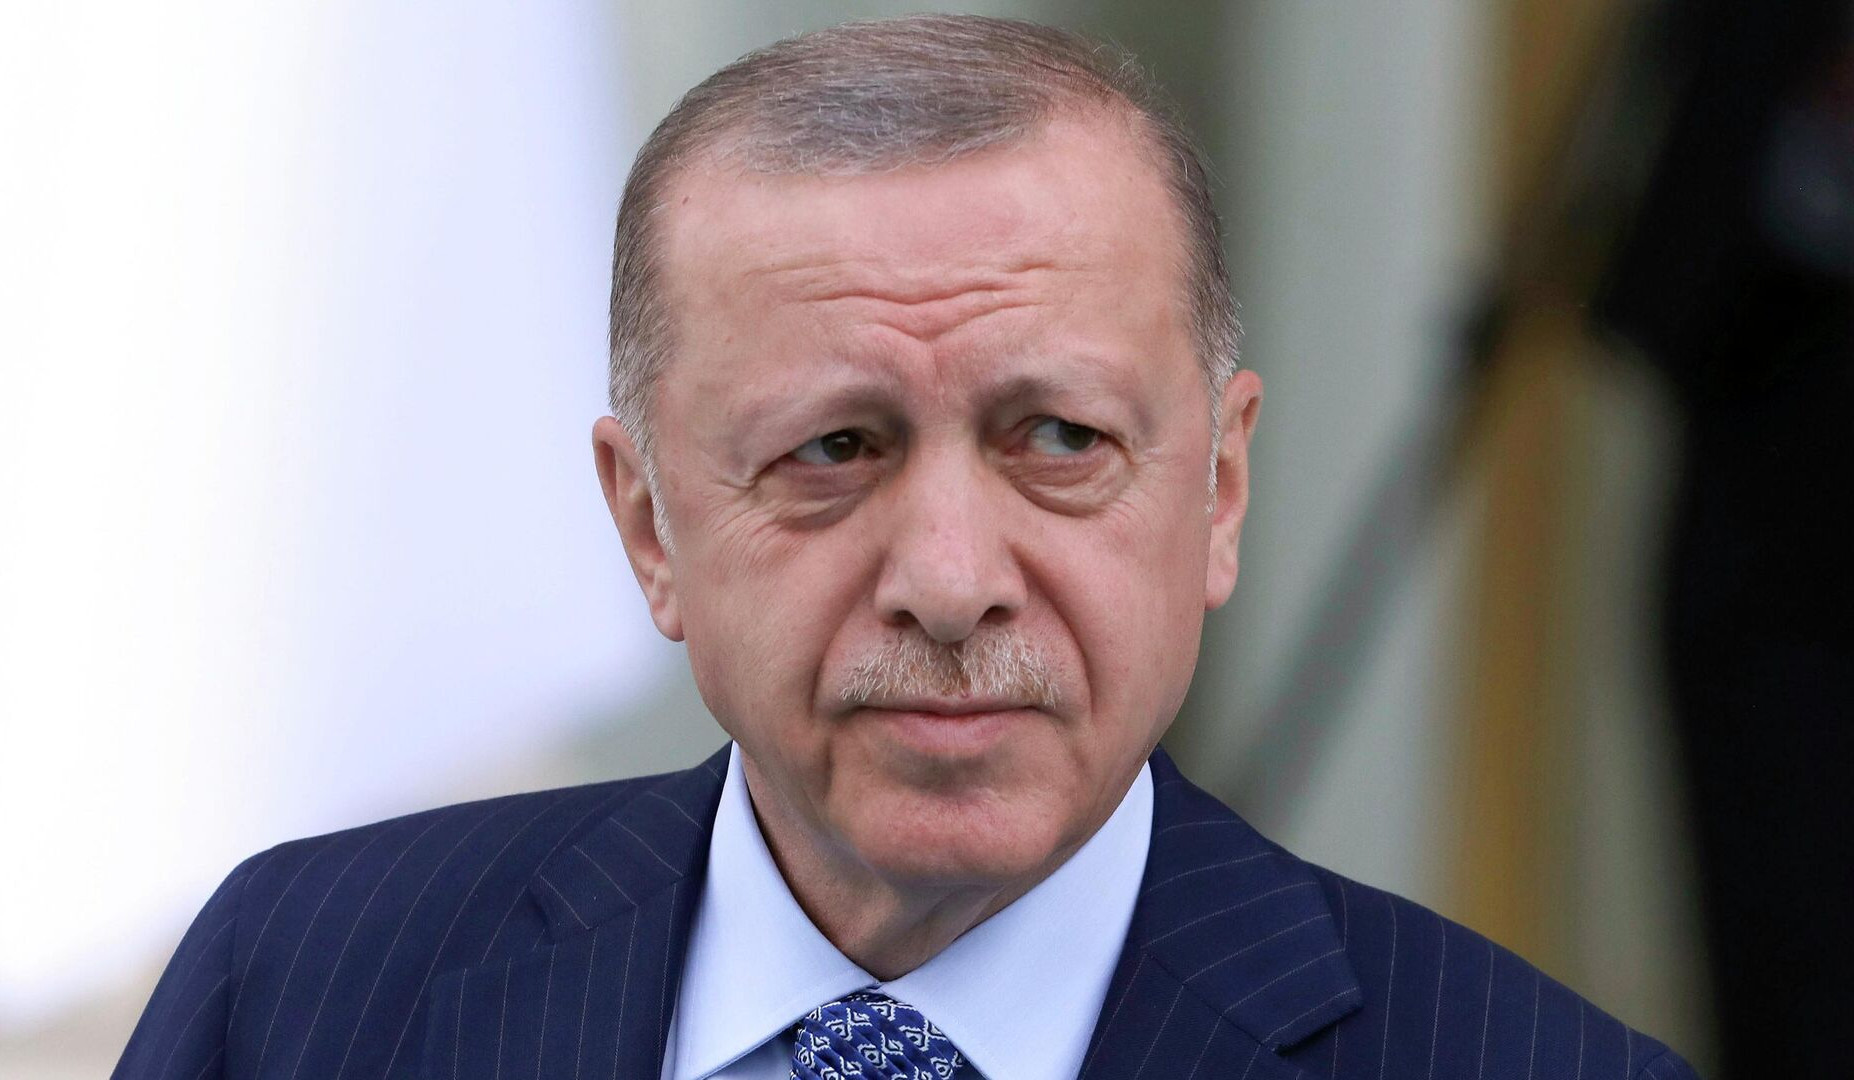 Թուրքիան կորցրել է Եվրամիության նկատմամբ վստահությունը. Էրդողան